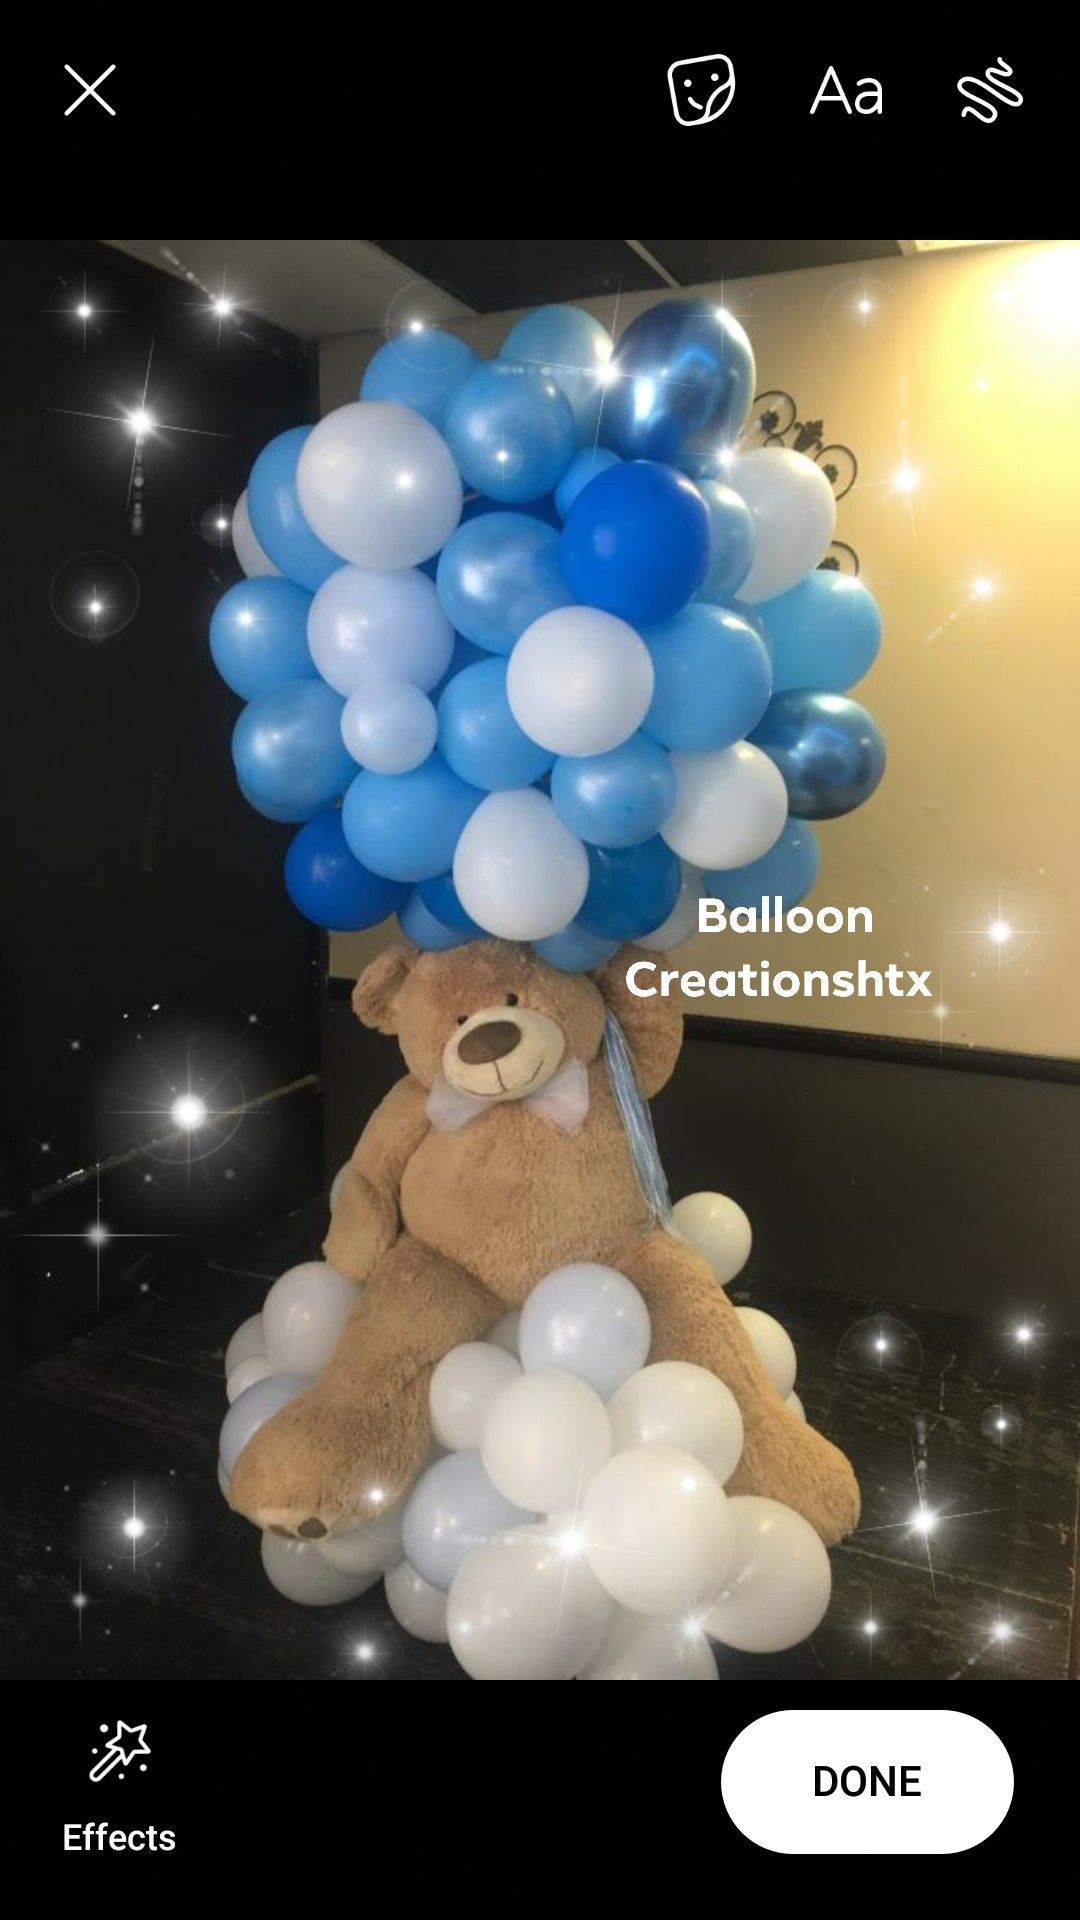 Jumbo bear on clouds balloon sculpture